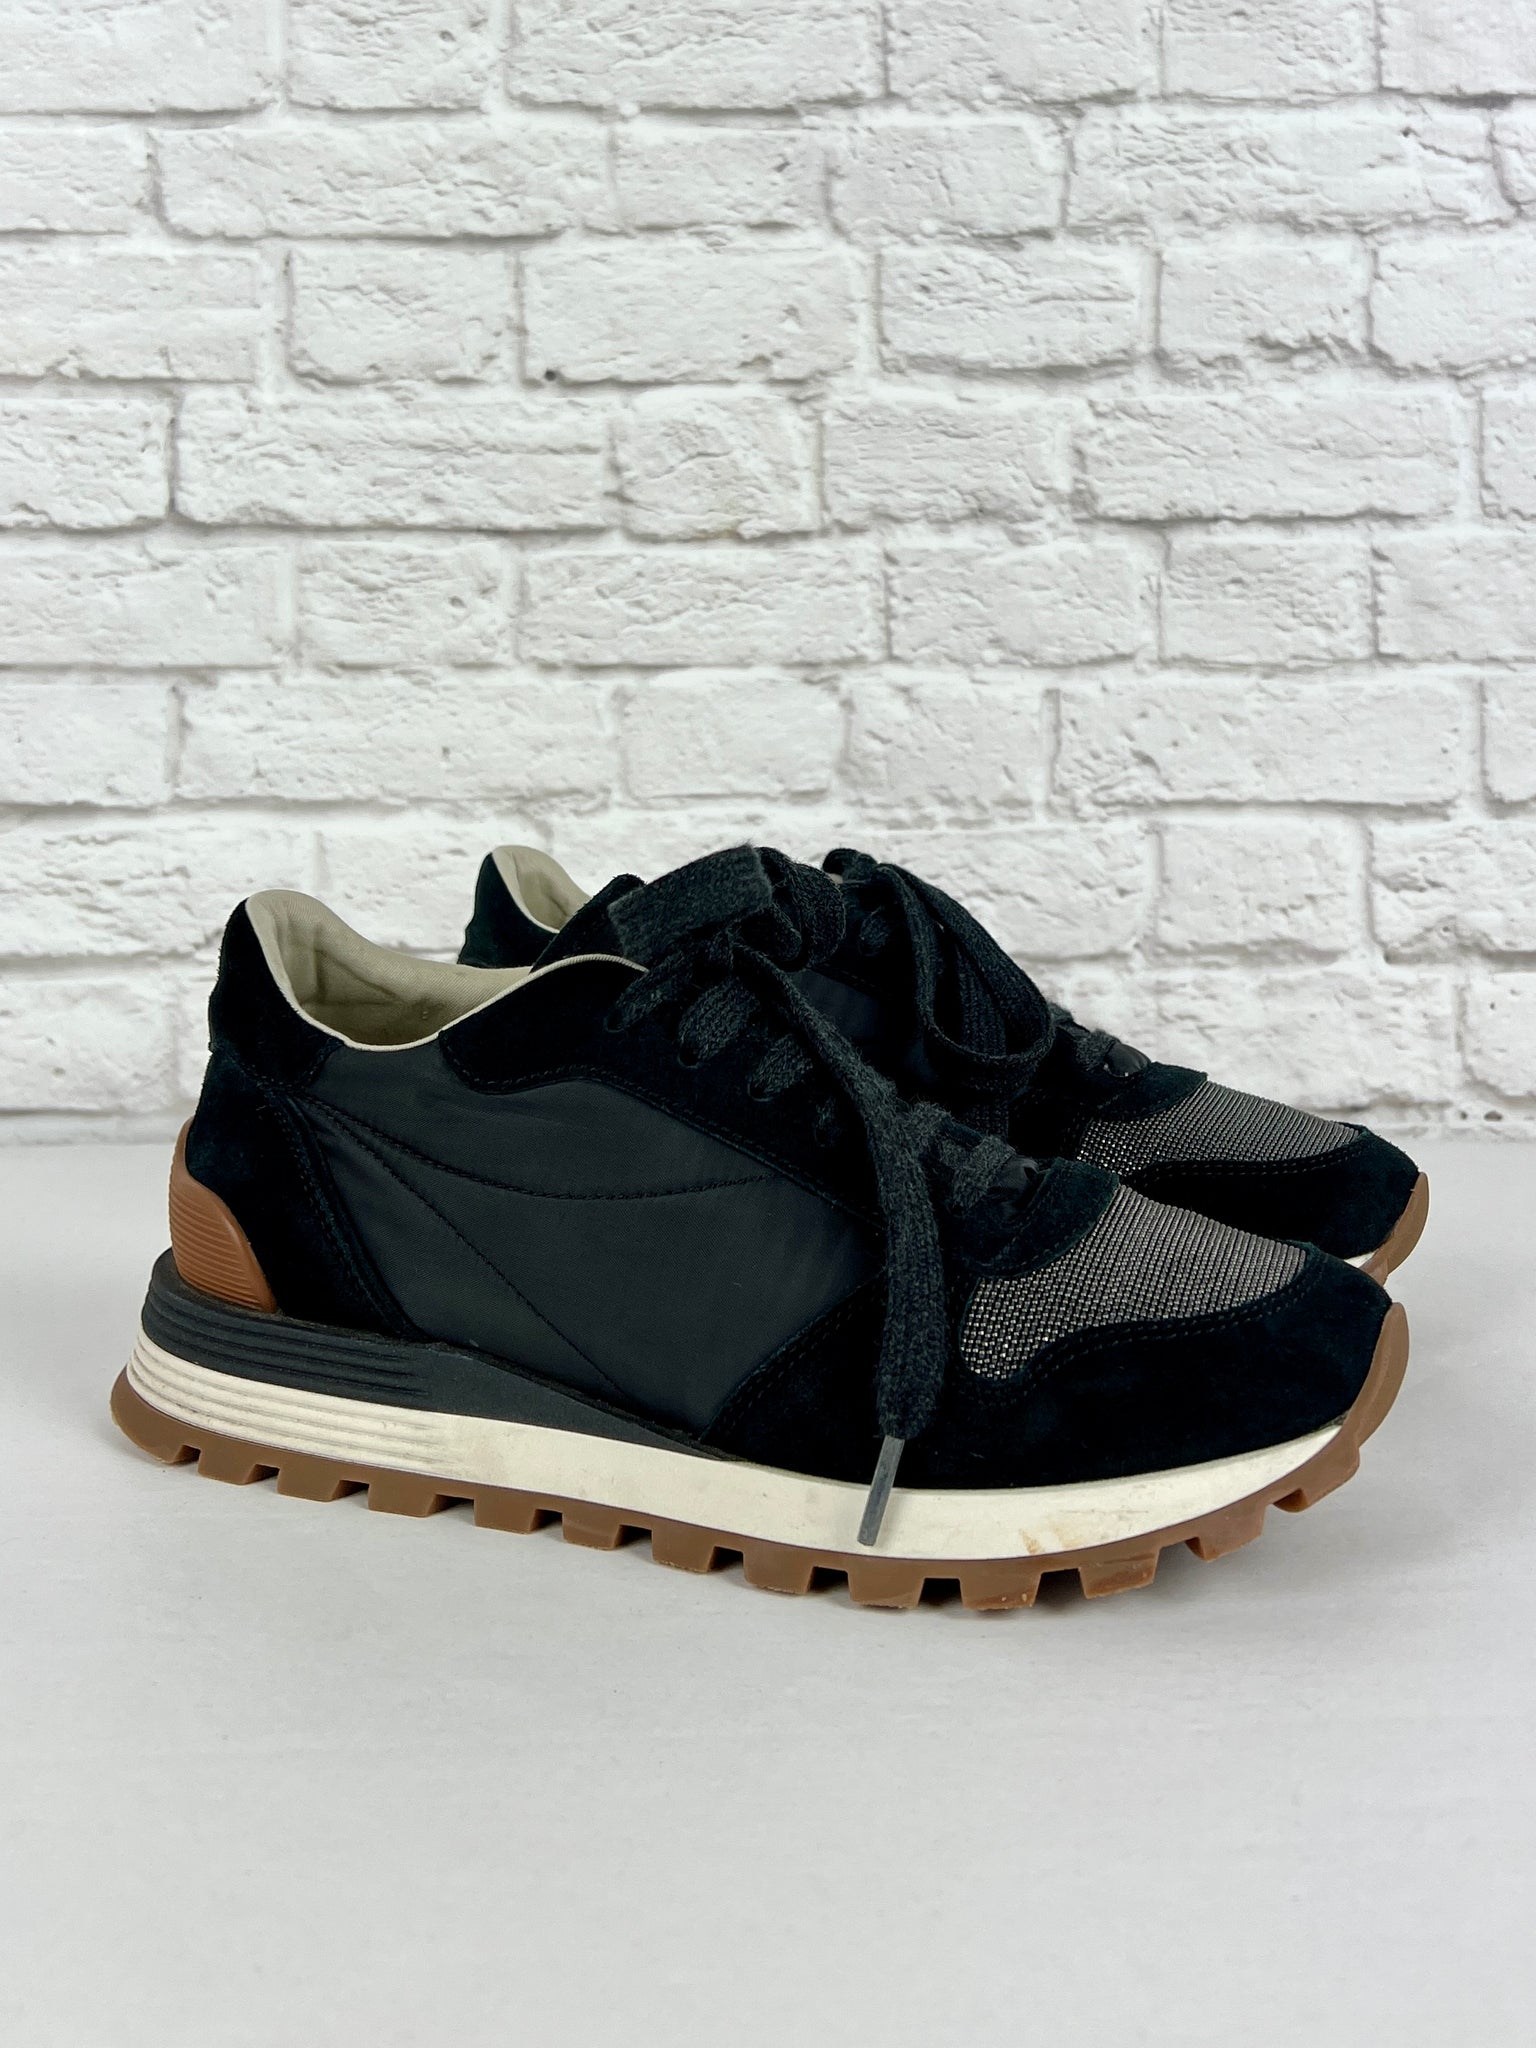 Brunello Cucinelli Sneakers, Black, Size 37.5